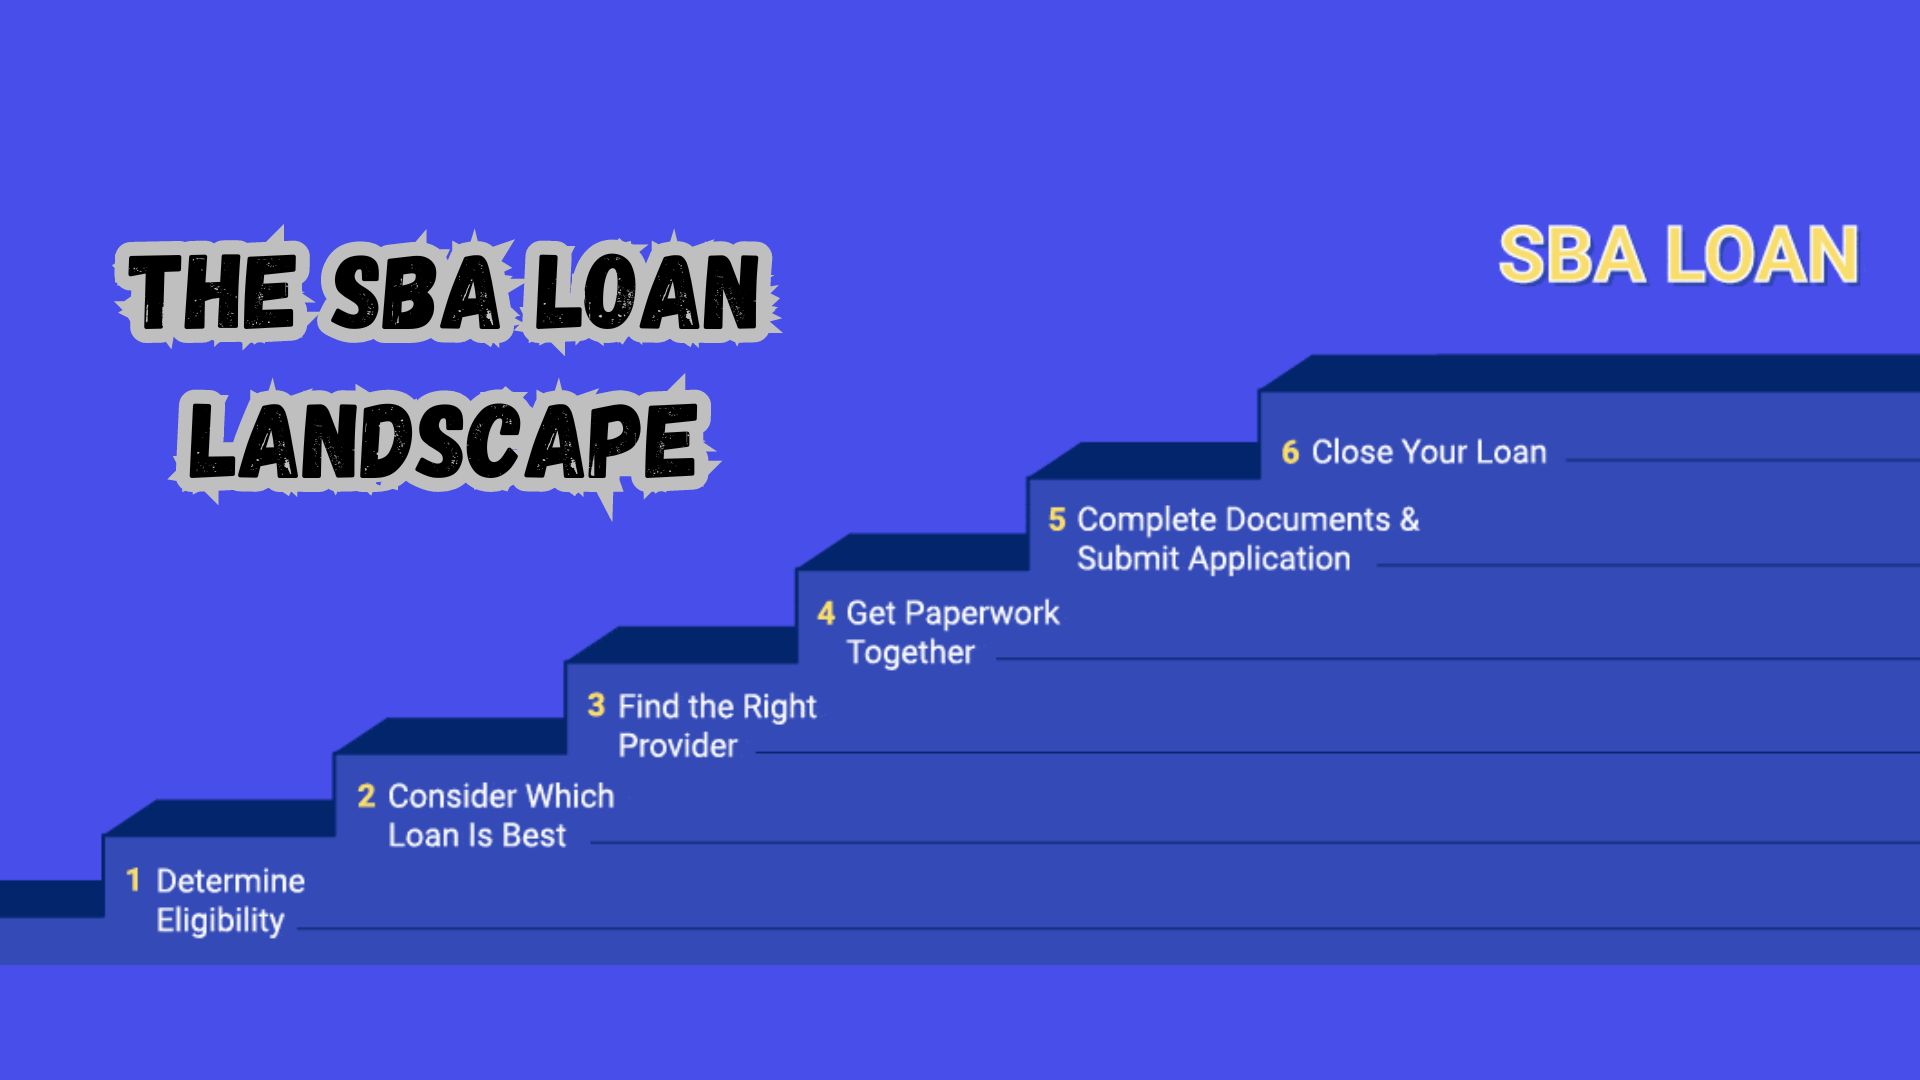 The SBA Loan Landscape.